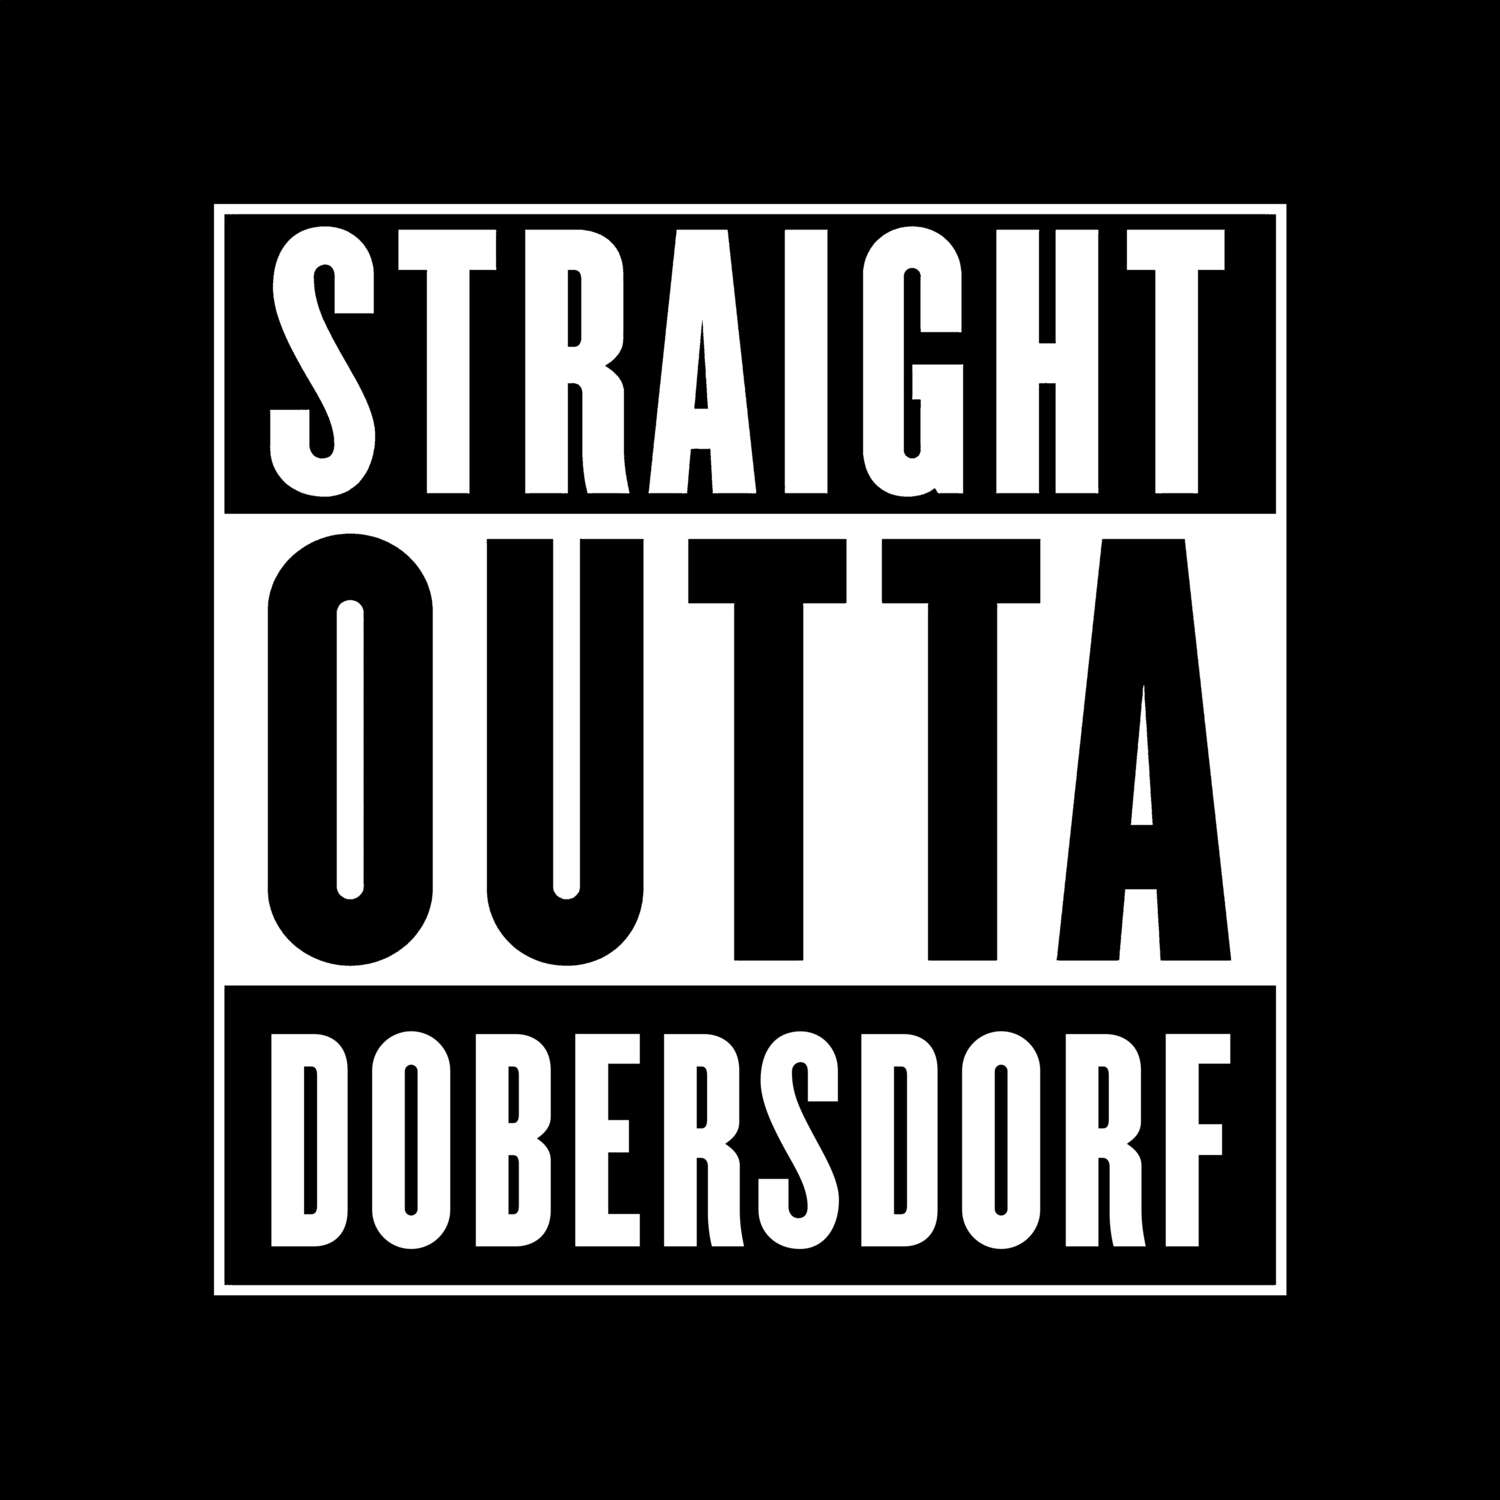 Dobersdorf T-Shirt »Straight Outta«